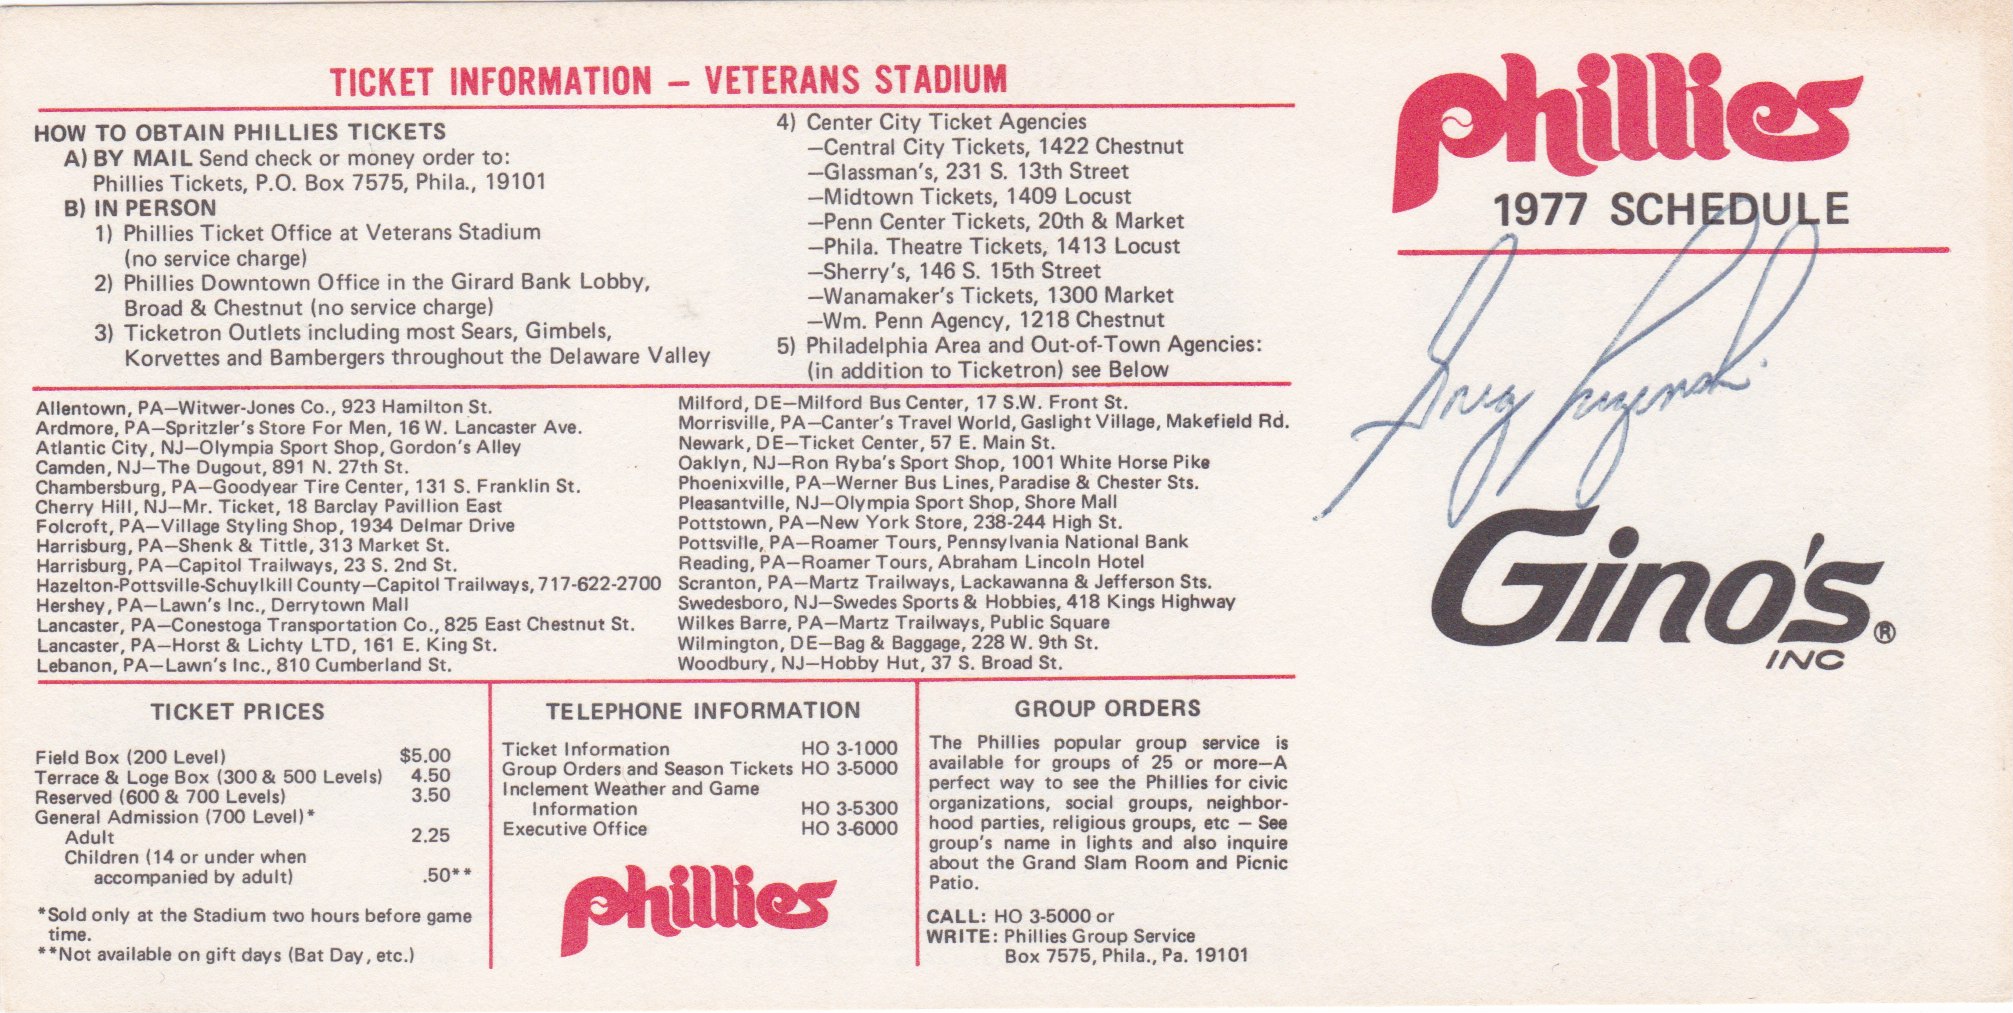 Old Images of Philadelphia - Phillies teammates Greg Luzinski (The Bull) &  Mike Schmidt